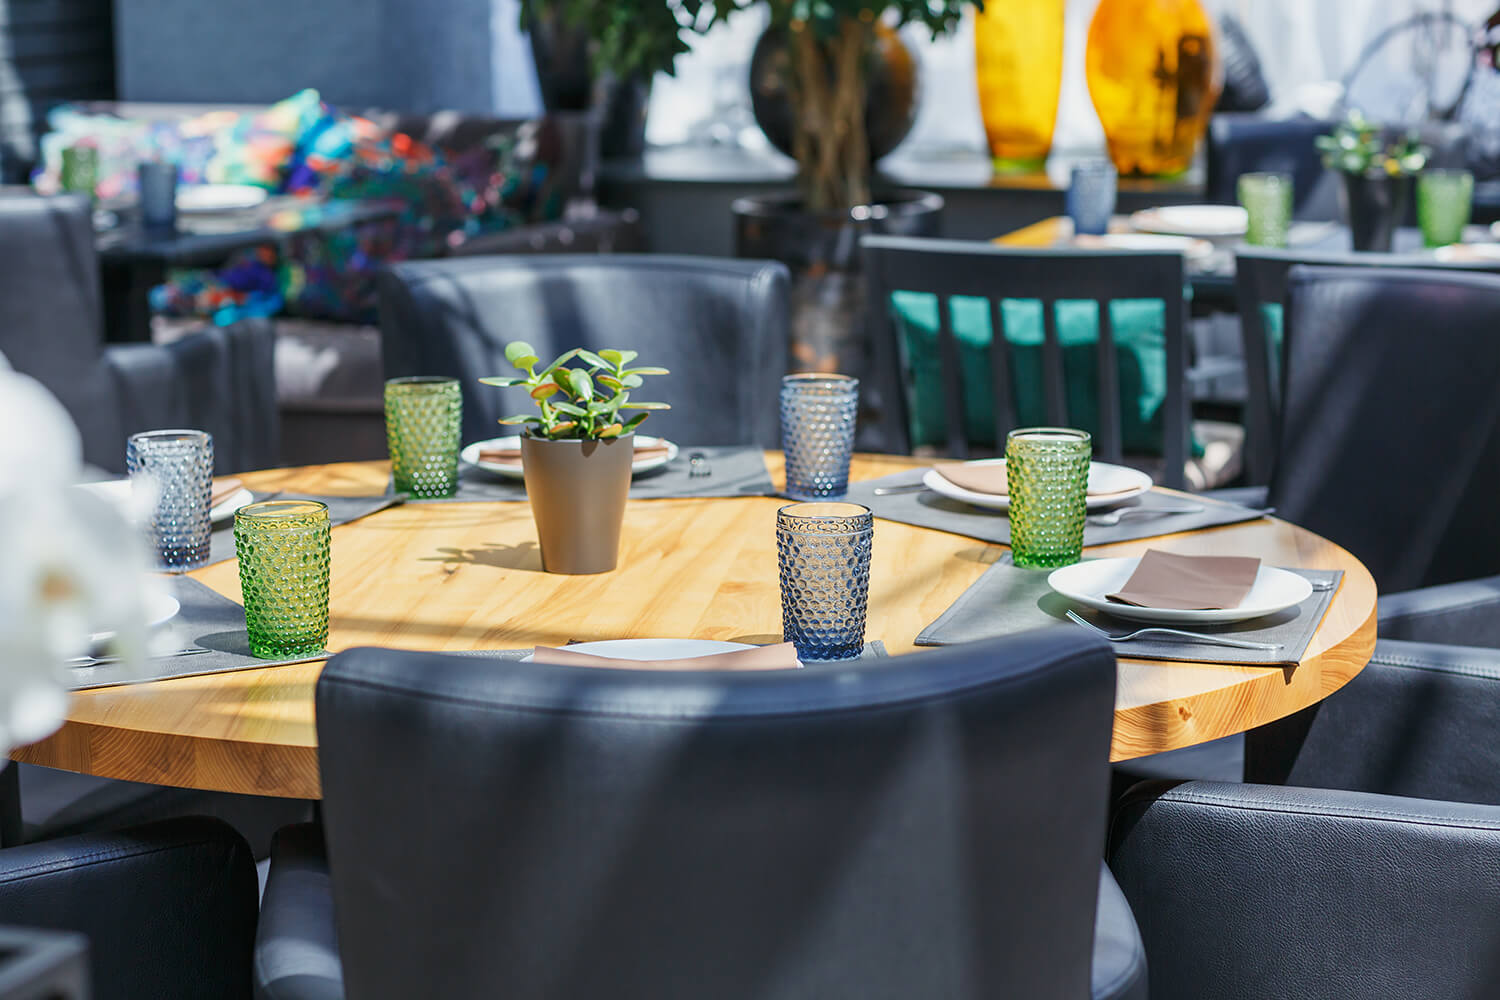 table-arrangement-in-restaurant-event-design-2021-09-02-07-23-41-utc (1)